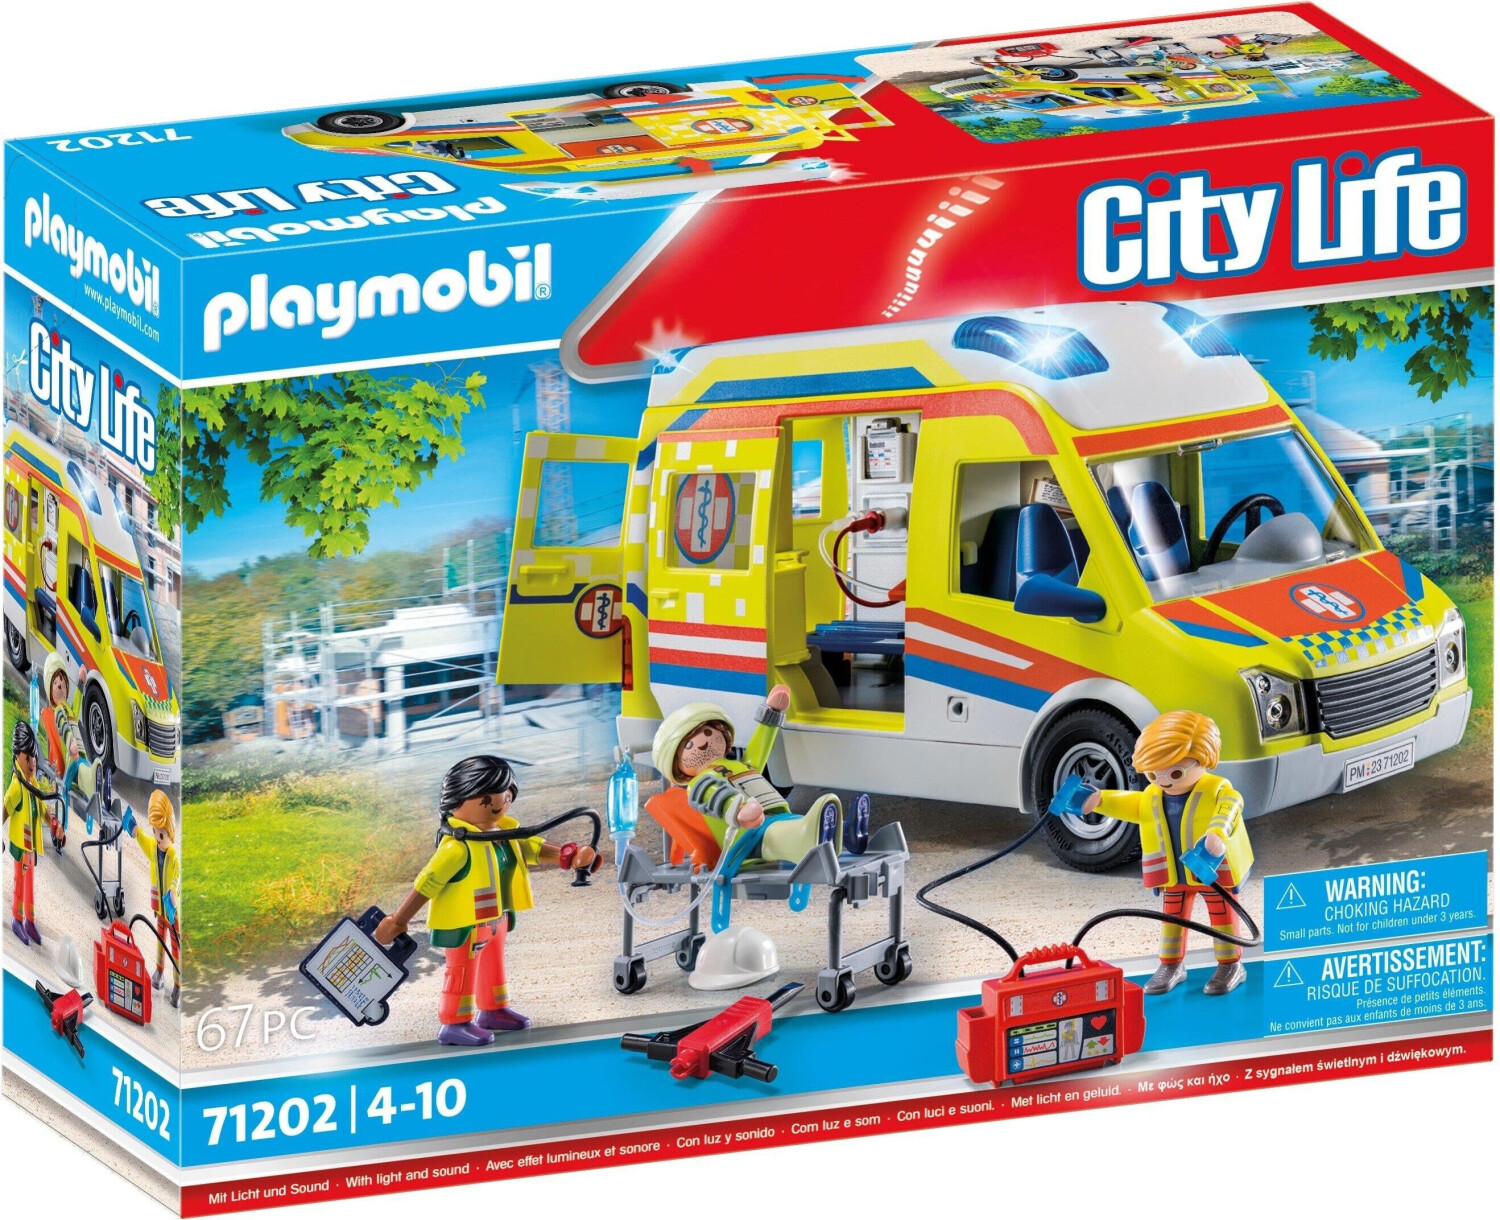 Playmobil City Life - Rettungswagen mit Licht und Sound (71202) ab